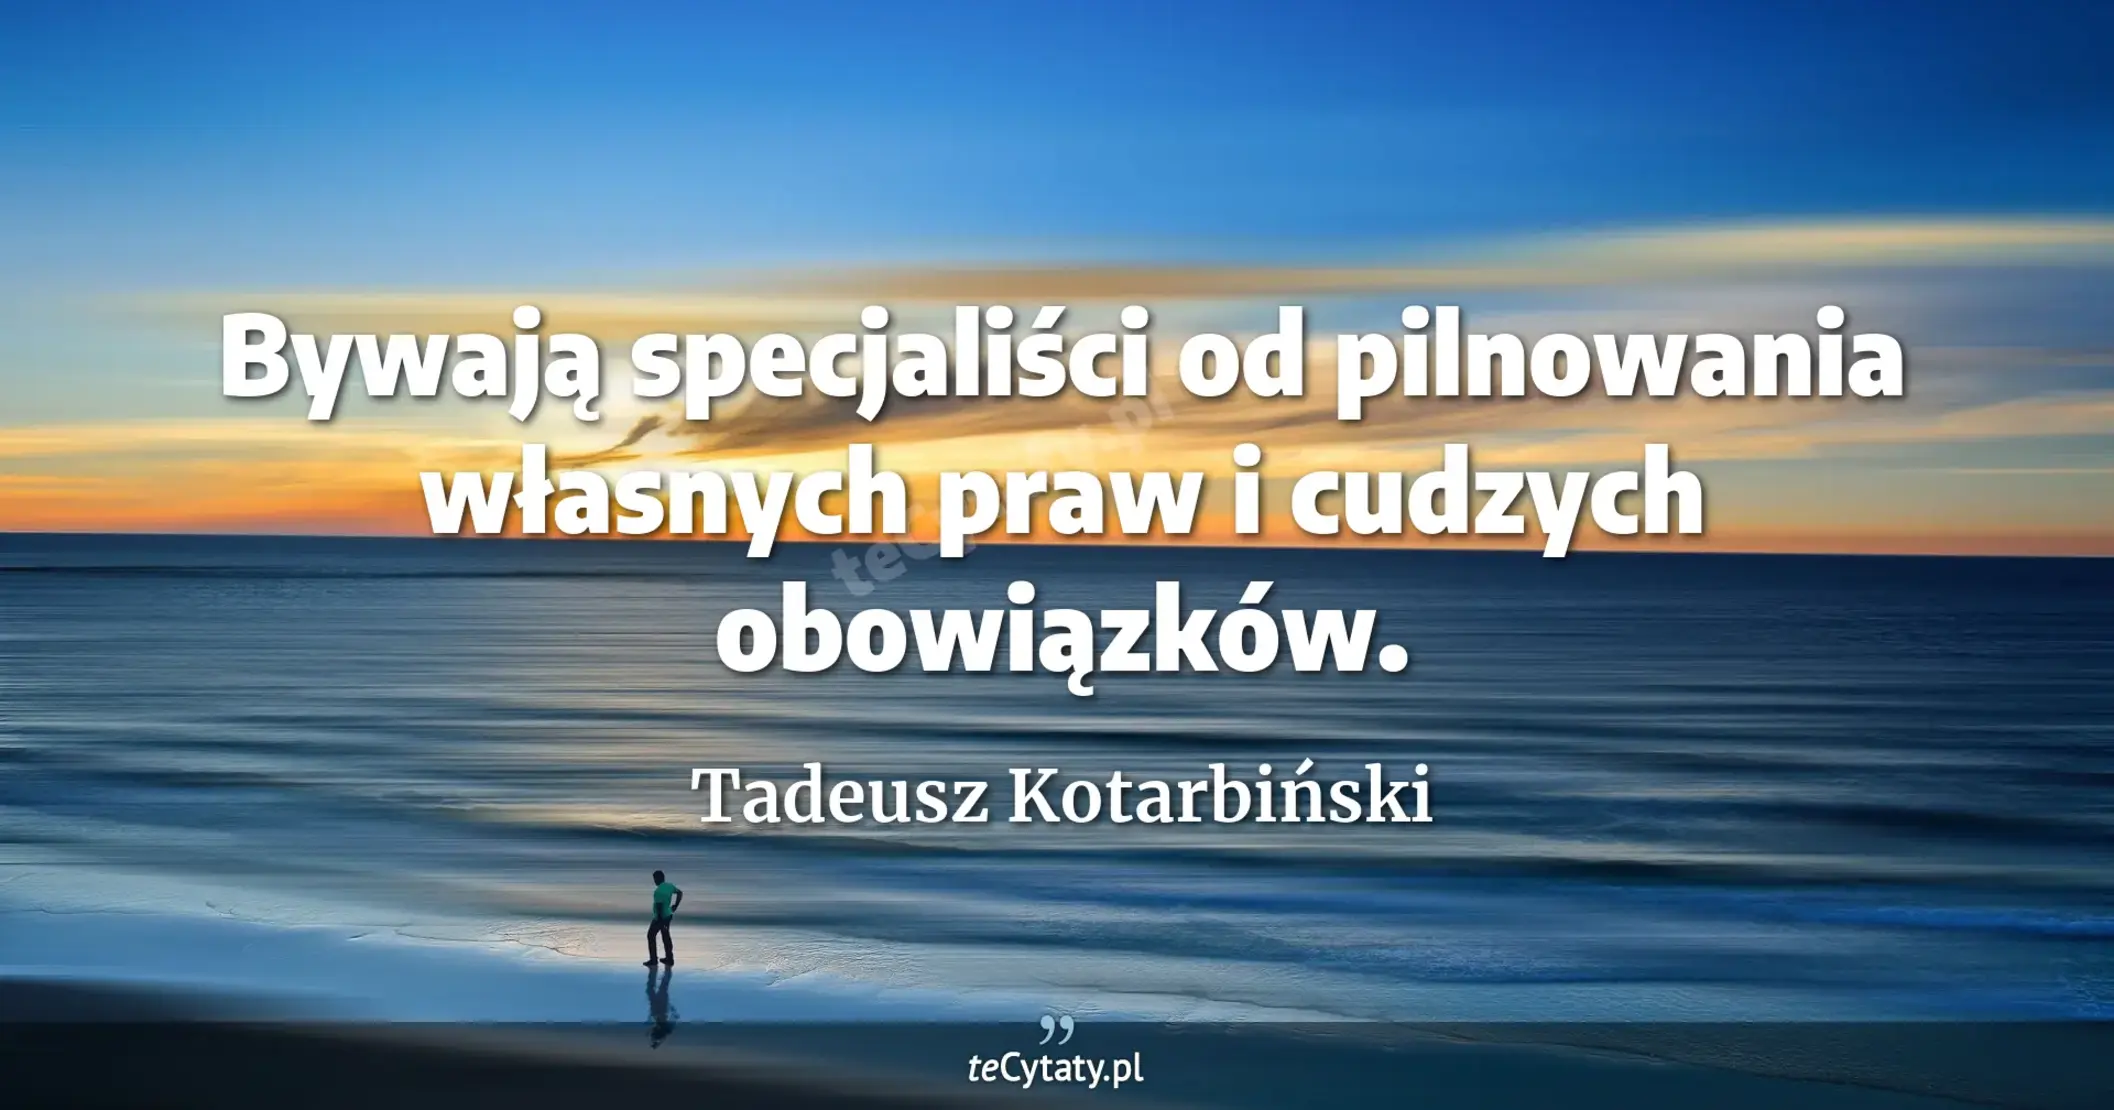 Bywają specjaliści od pilnowania własnych praw i cudzych obowiązków. - Tadeusz Kotarbiński